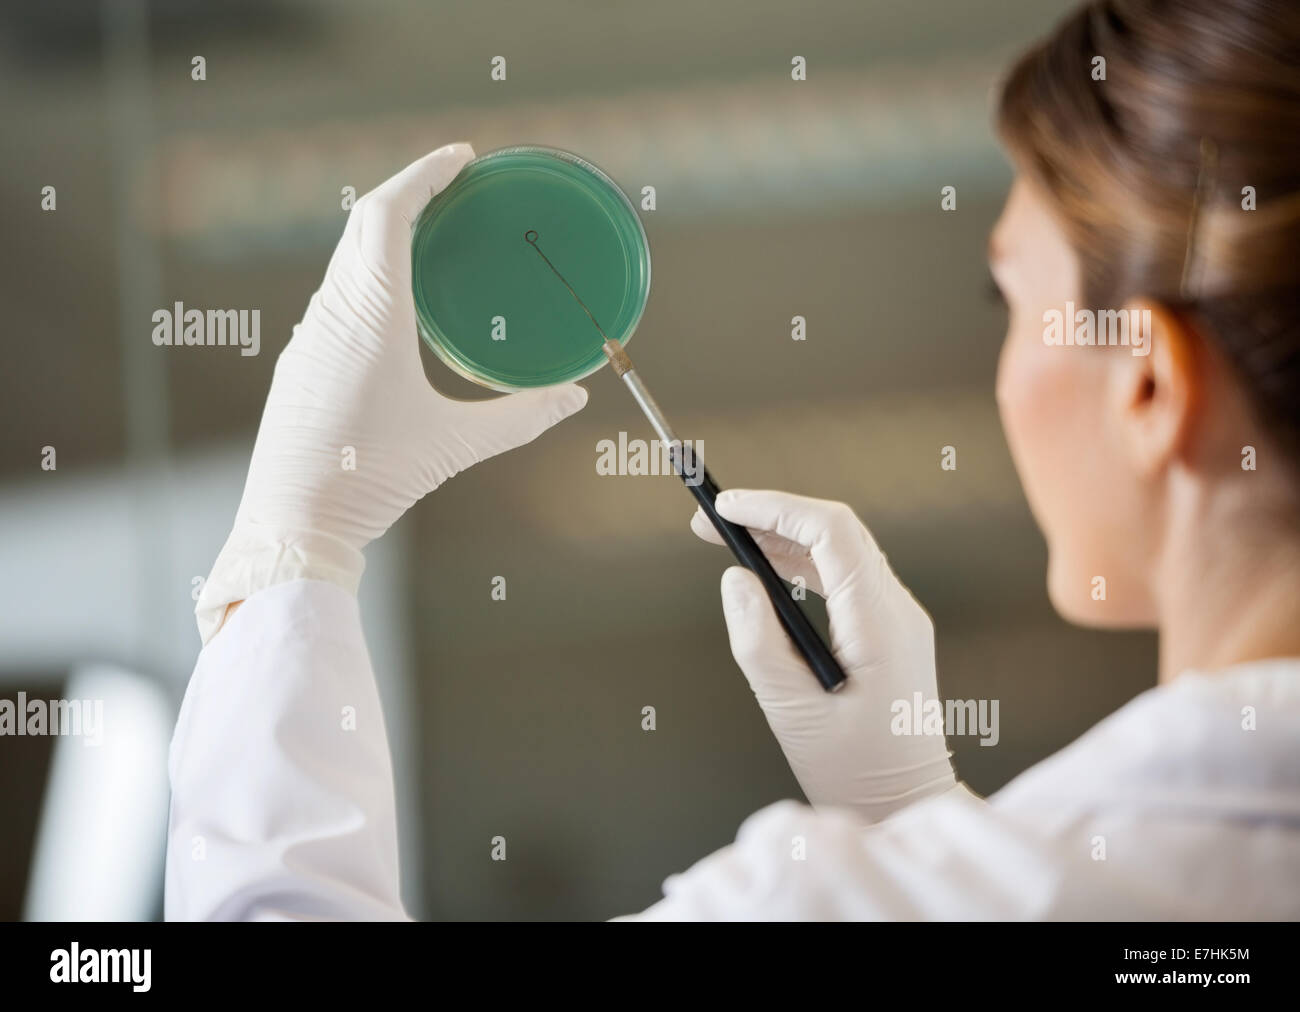 Scientist examining petri dish in lab Banque D'Images